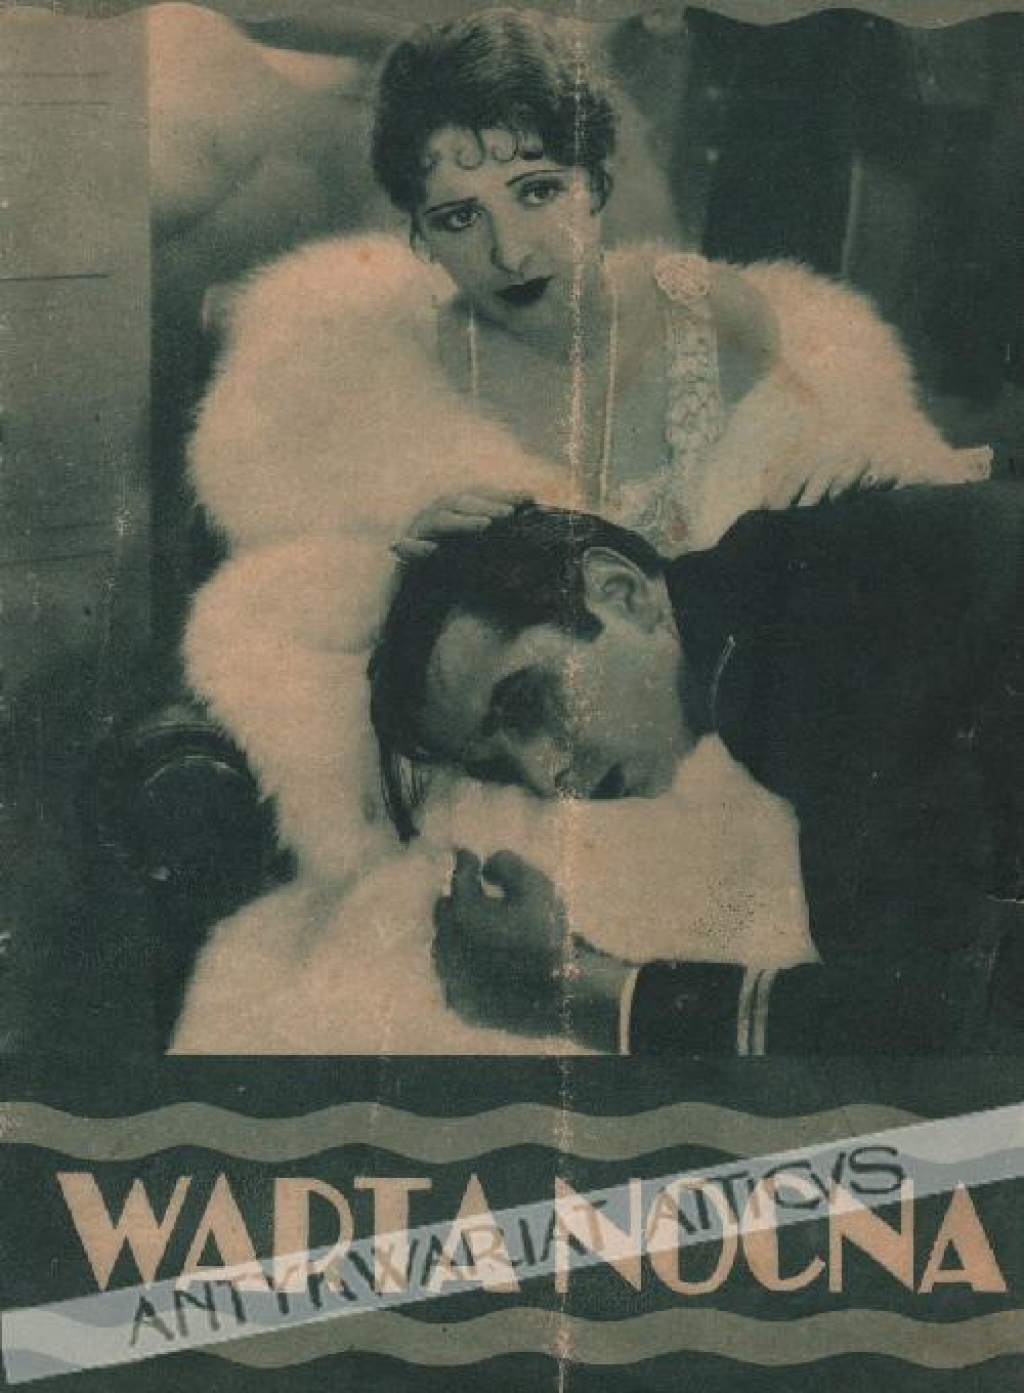 [filmowy folder reklamowy, ok. 1930] Warta nocna. Dramat  [Night Watch]